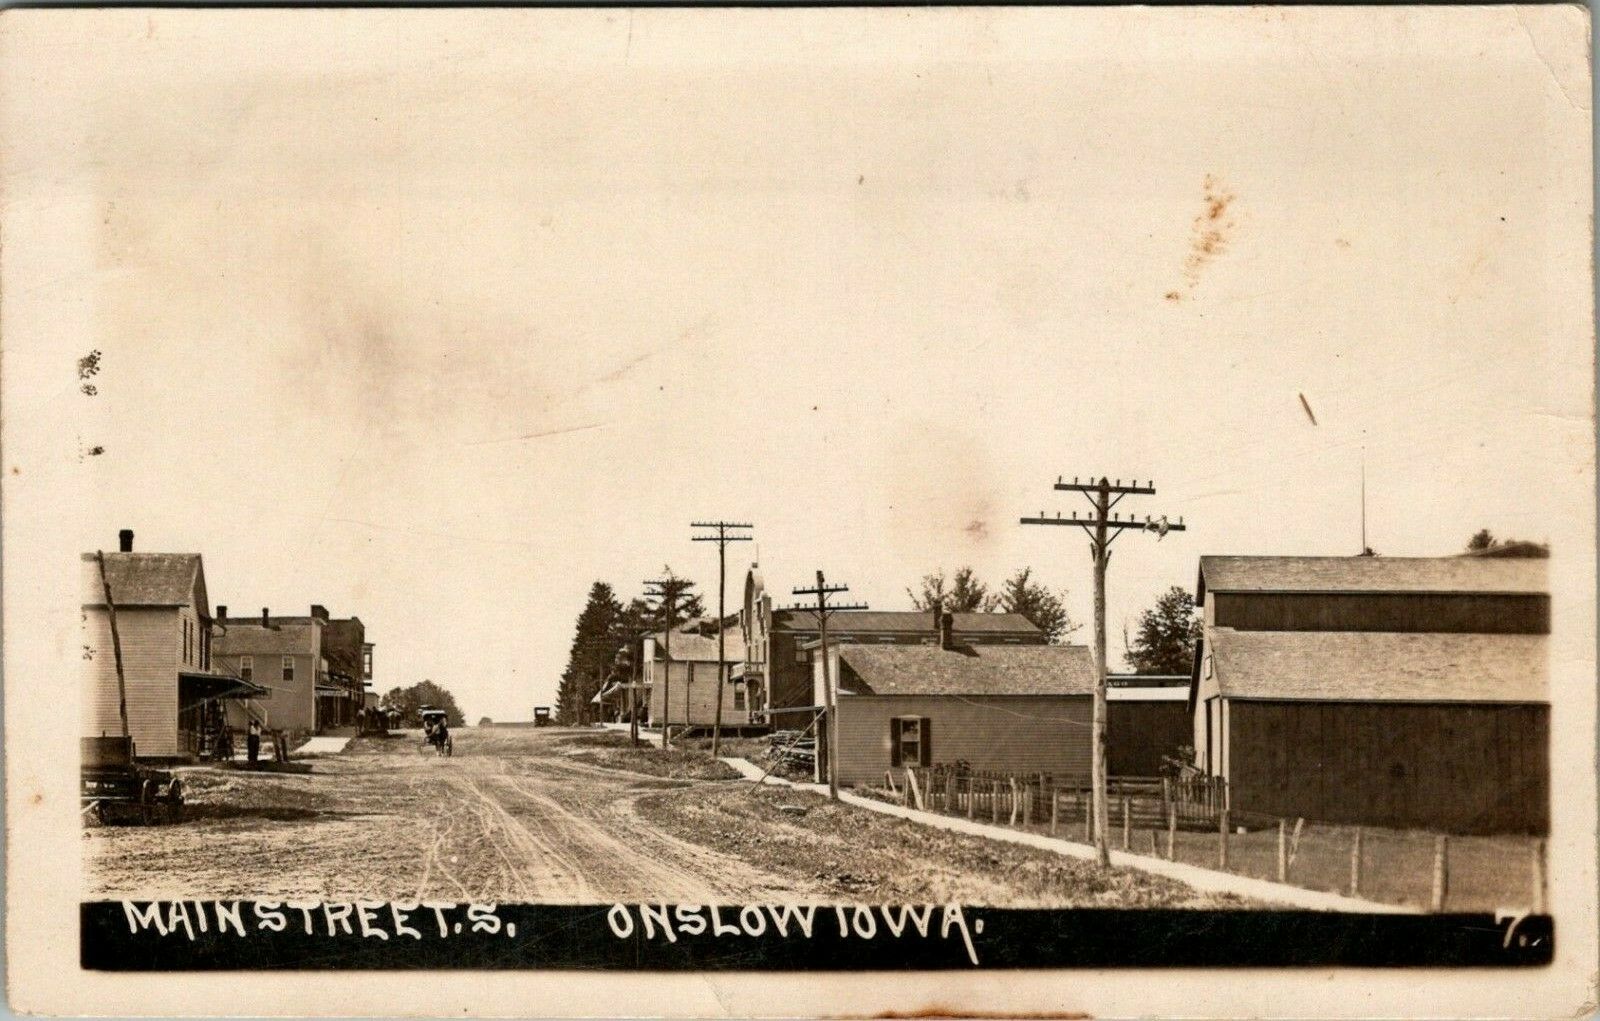 Onslow Main Street, Onslow, Iowa